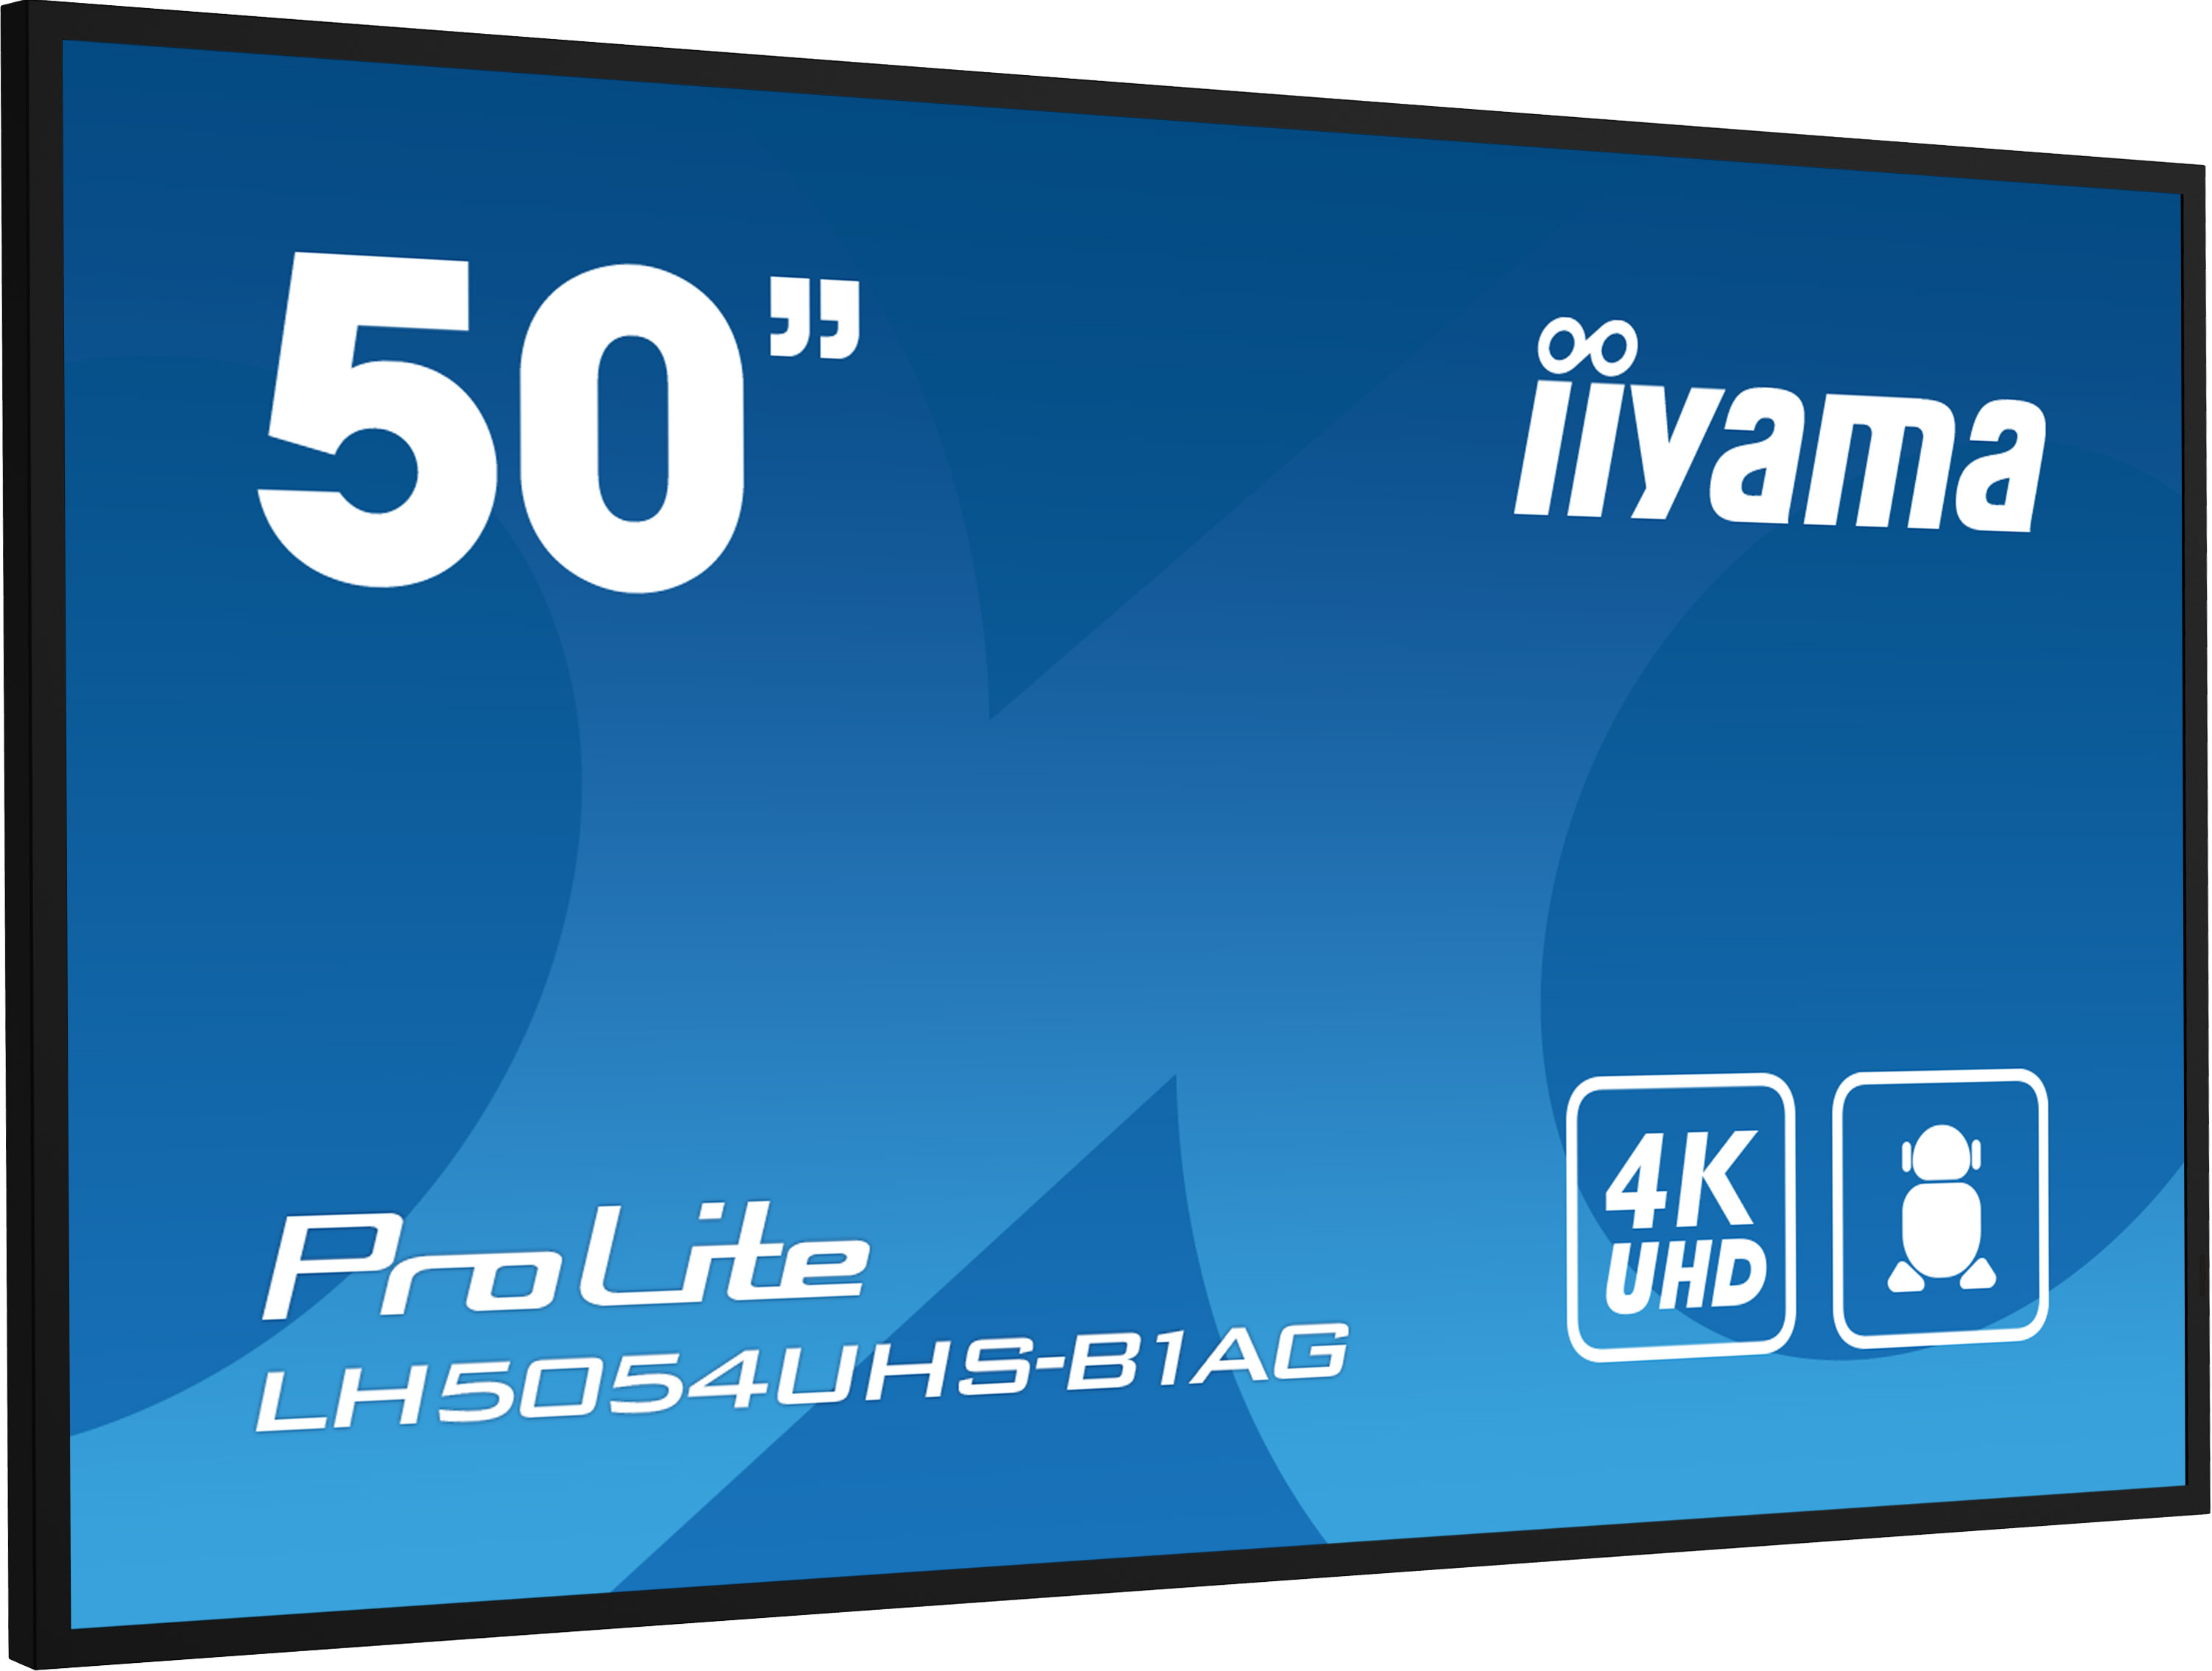 50" iiyama LH5054UHS-B1AG: VA, 4K UHD, Android, 24/ 7 